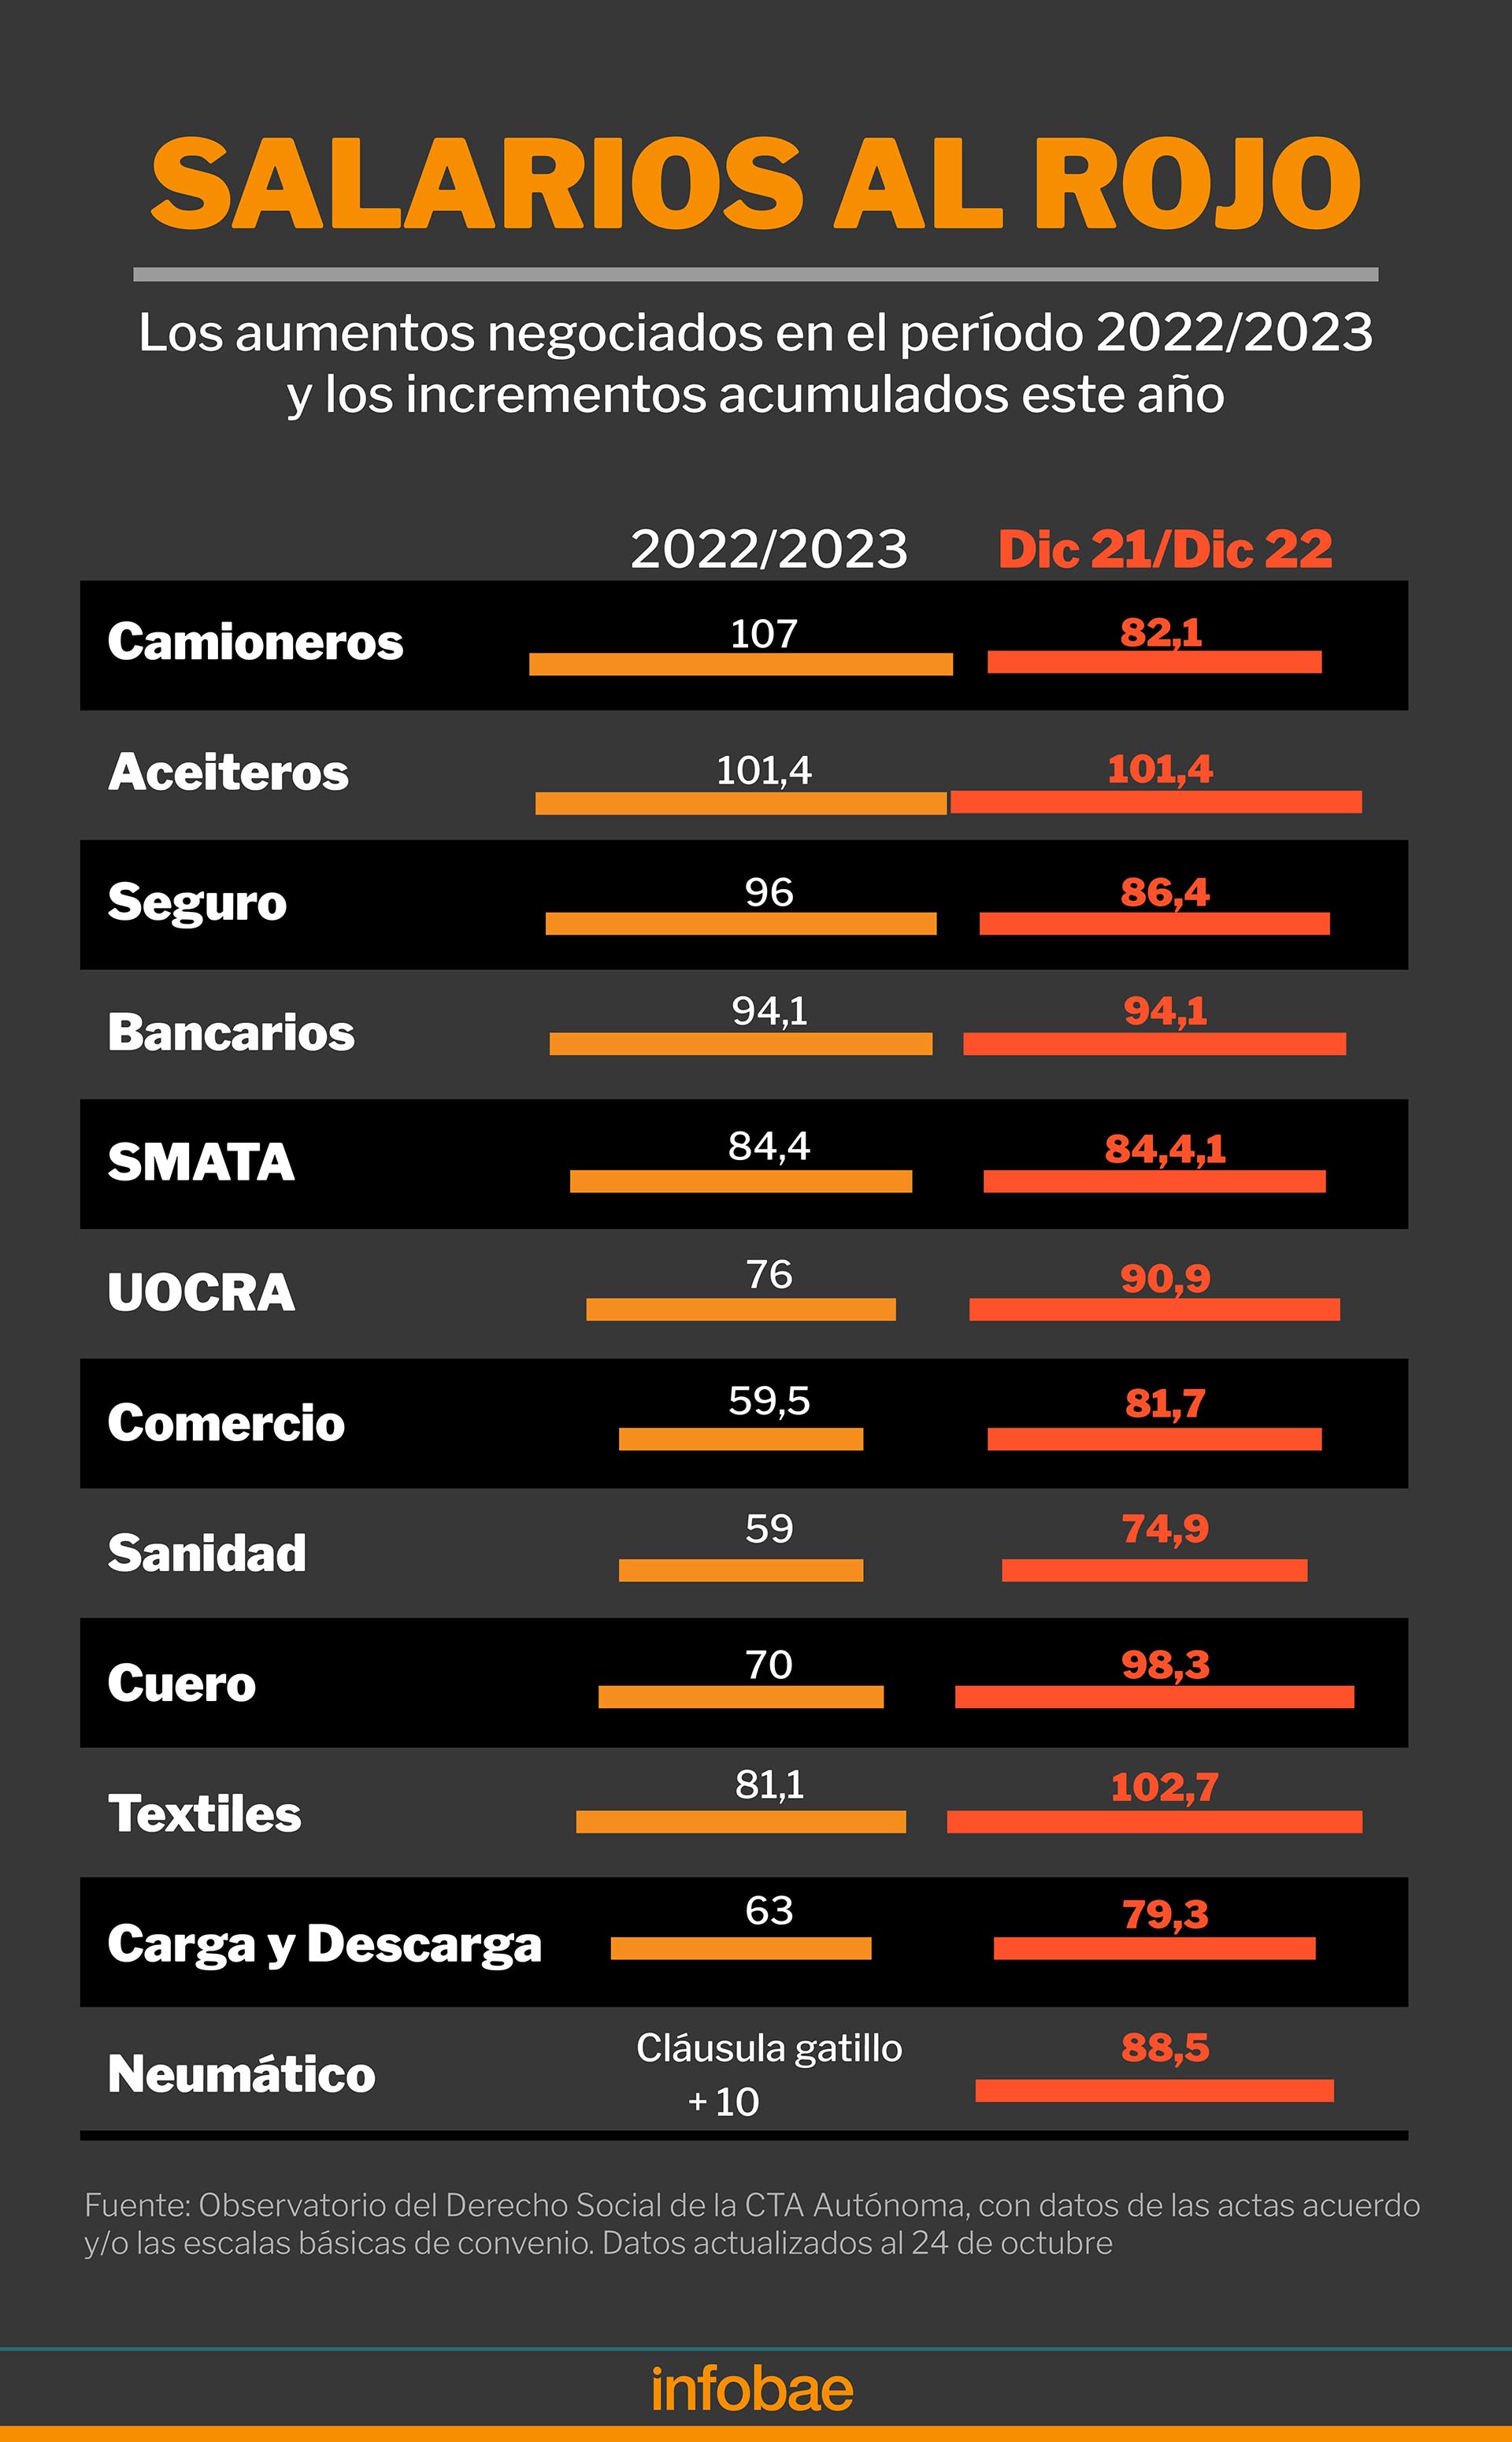 Algunos de los aumentos salariales negociados en las paritarias, tomando en cuenta el período 2022-2023 y diciembre 2021-diciembre 2022